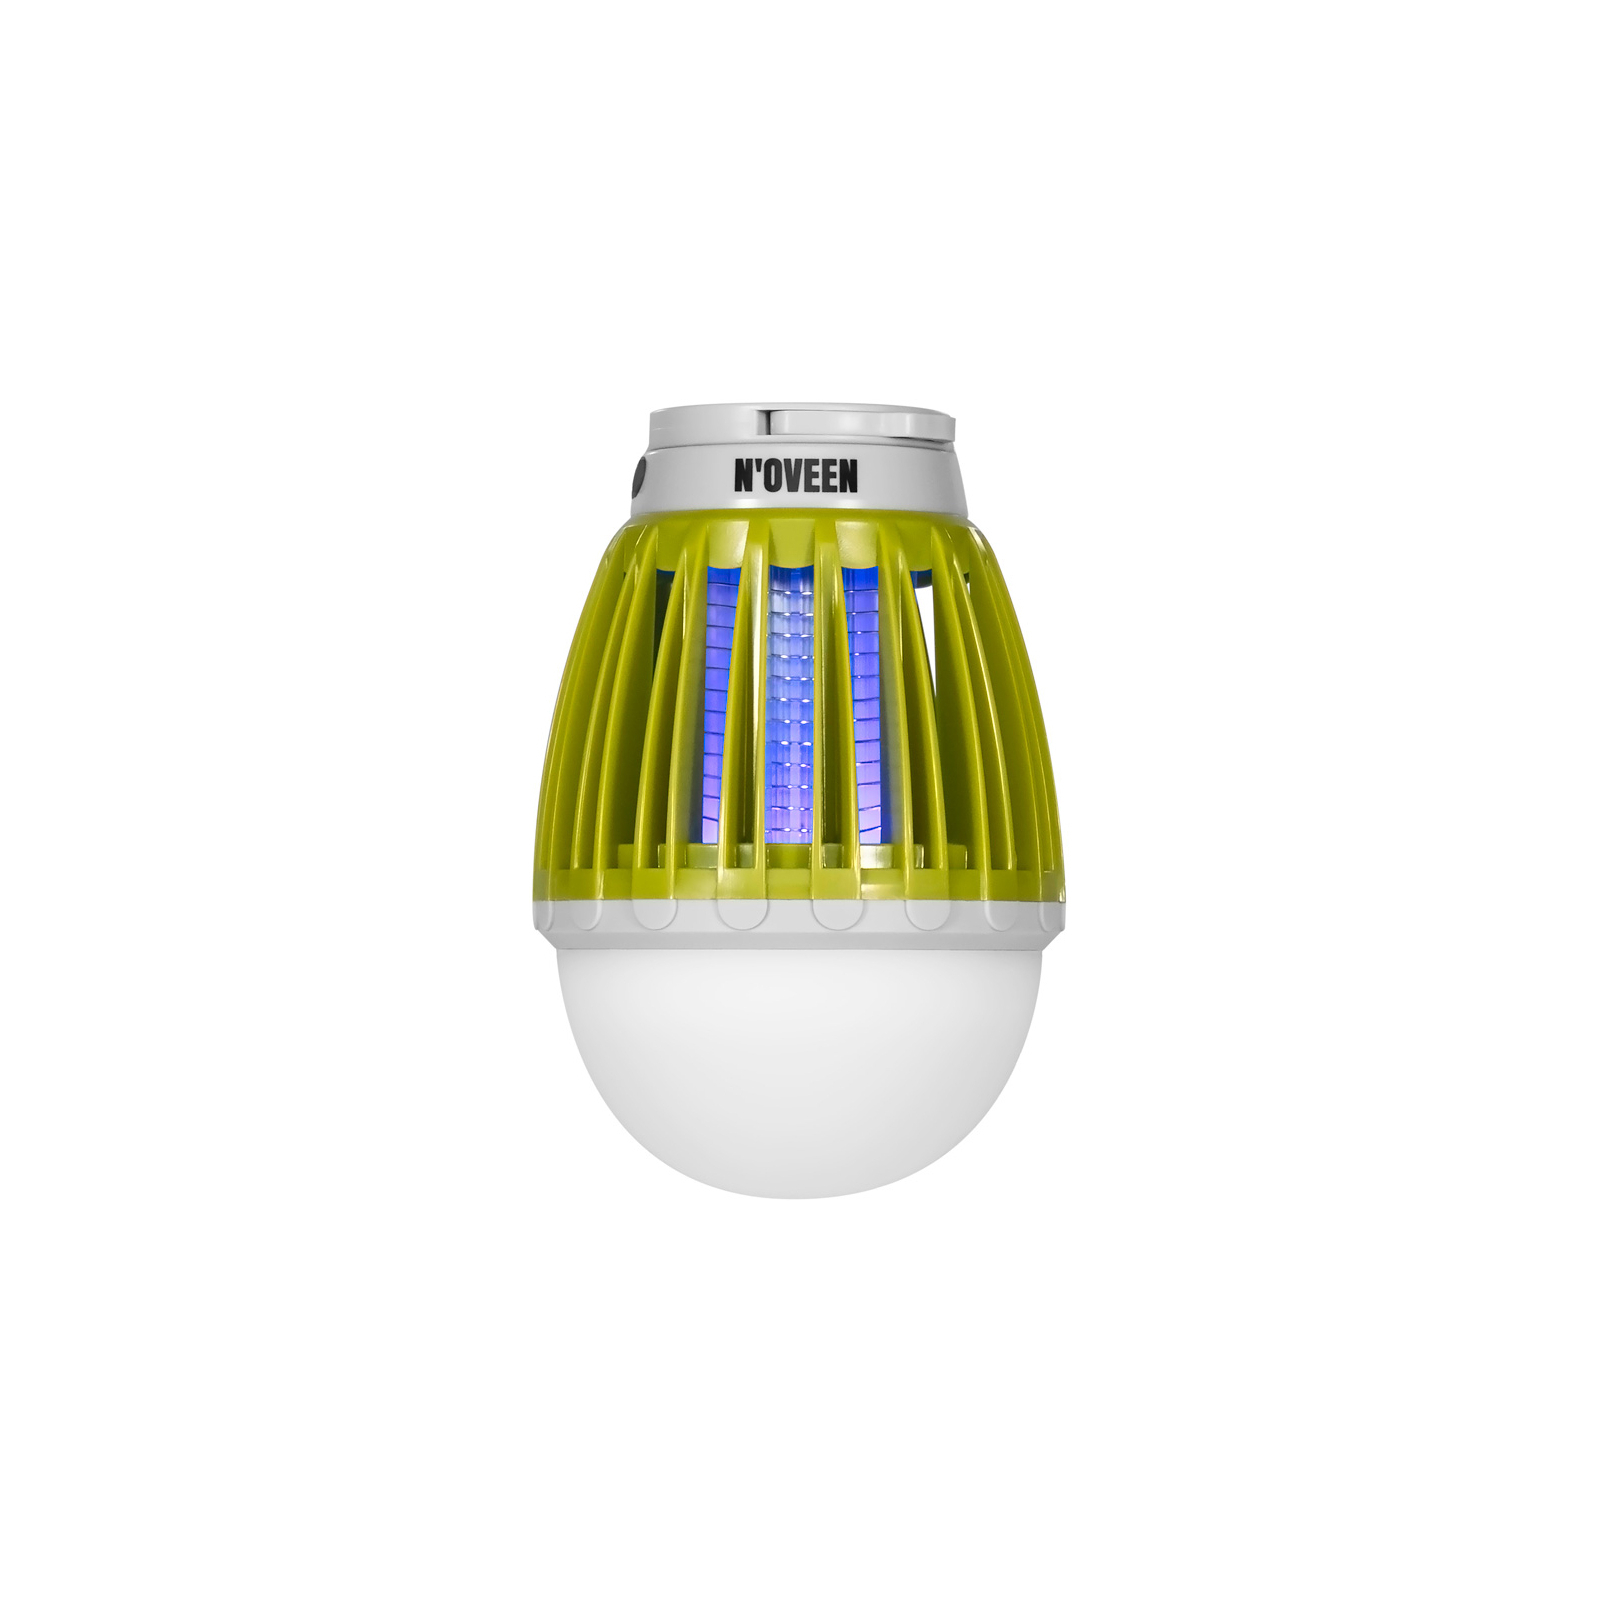 Инсектицидная лампа N'oveen IKN824 (RL074374)